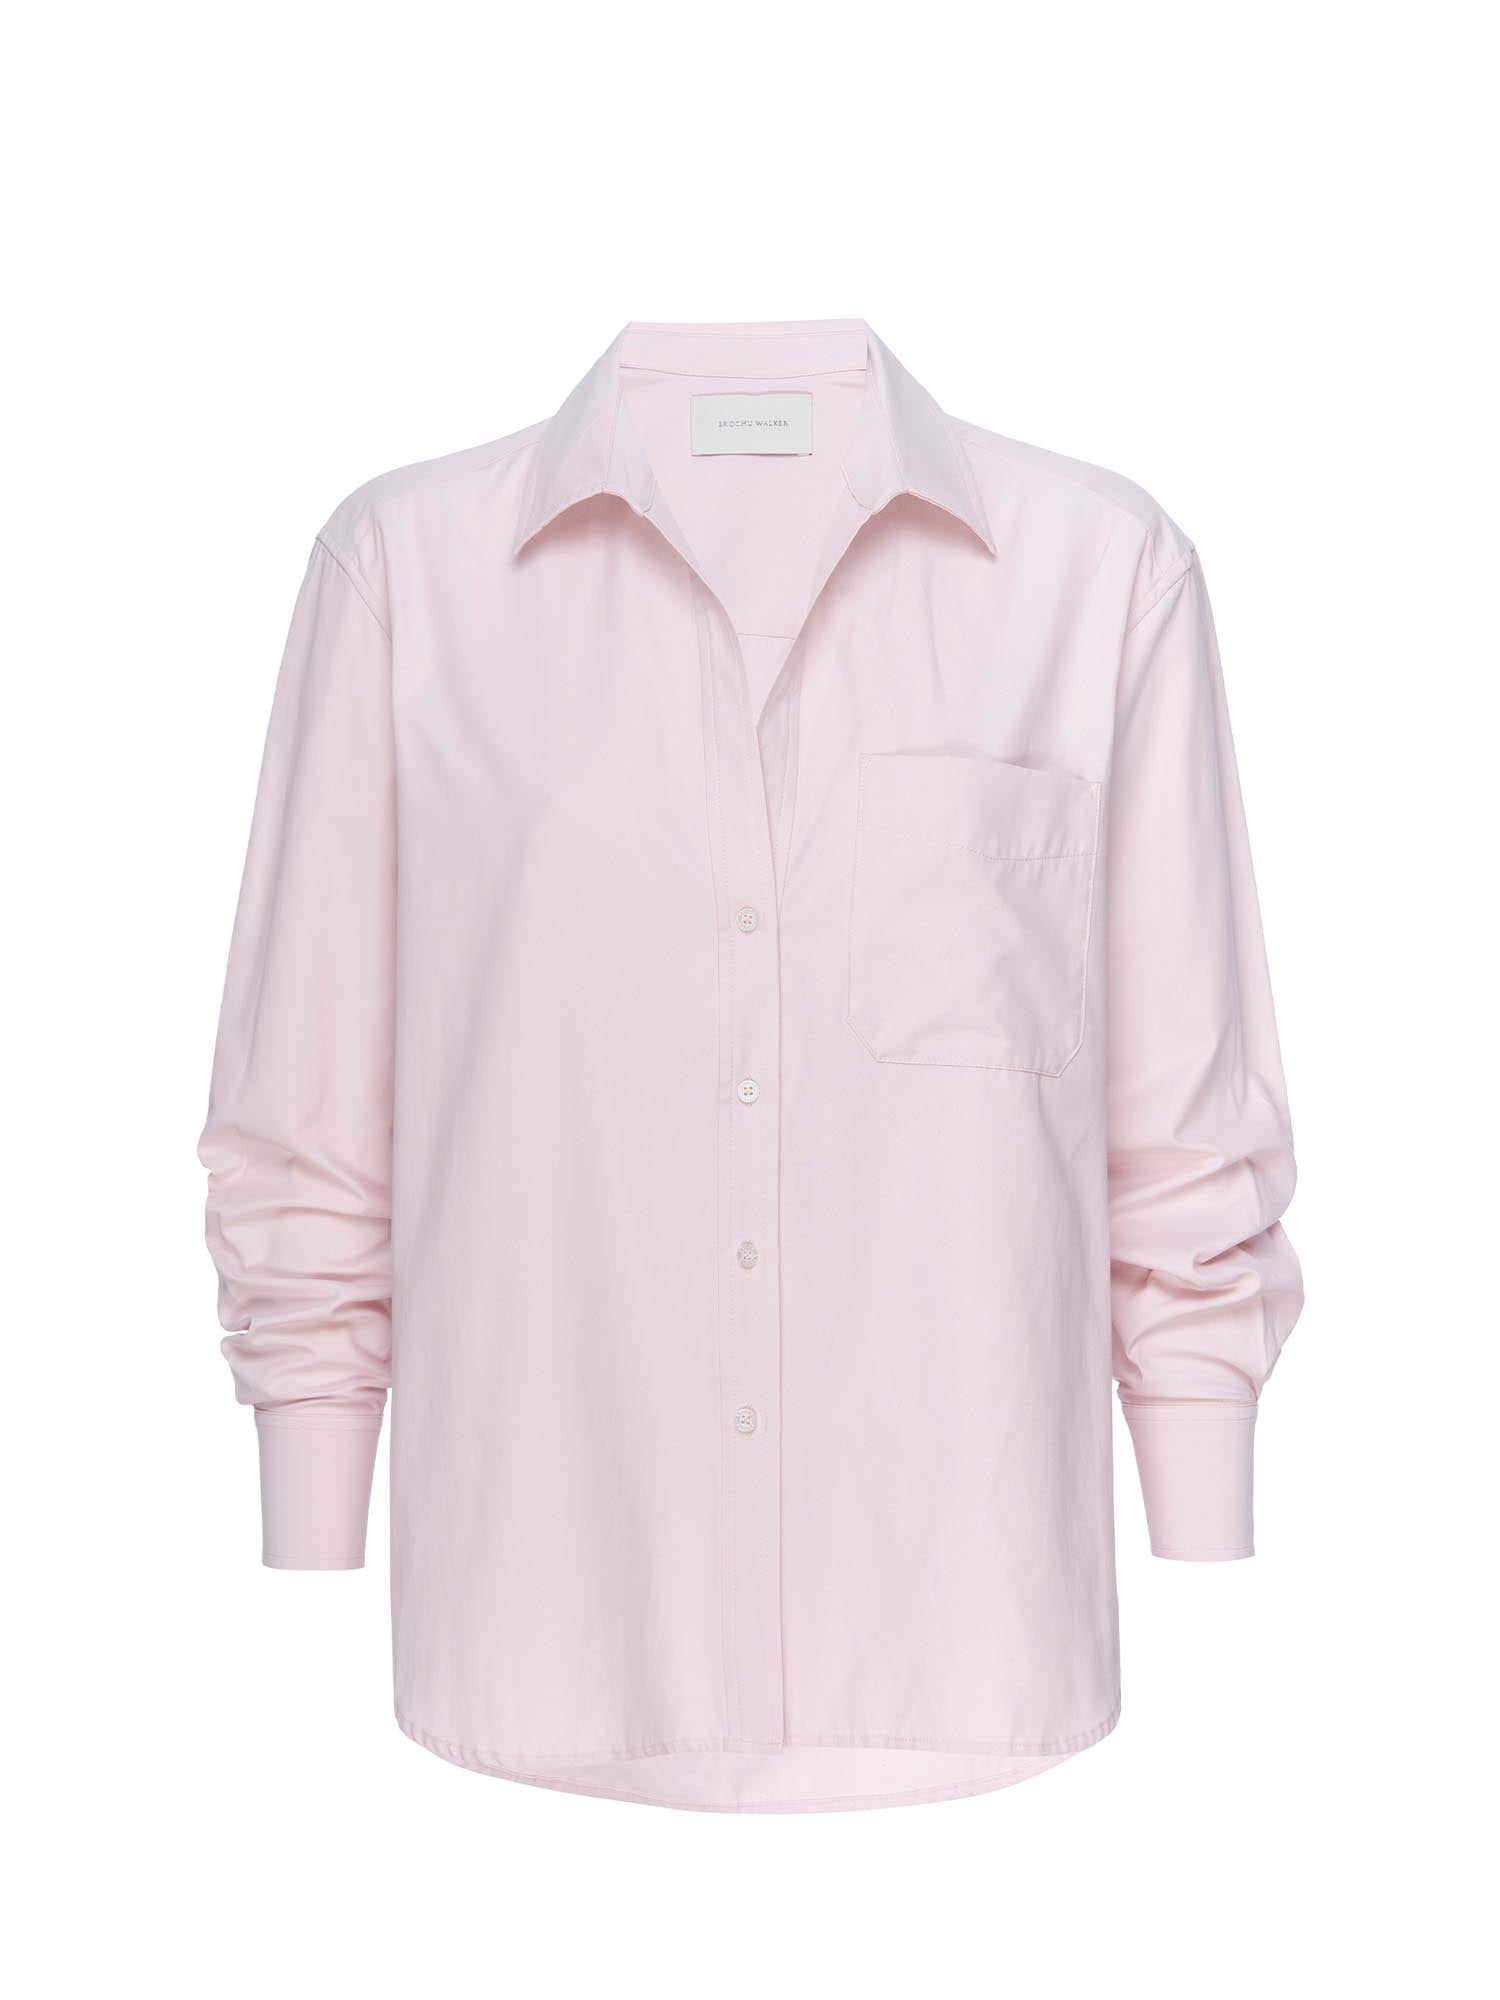 Everyday button up light pink shirt flat view